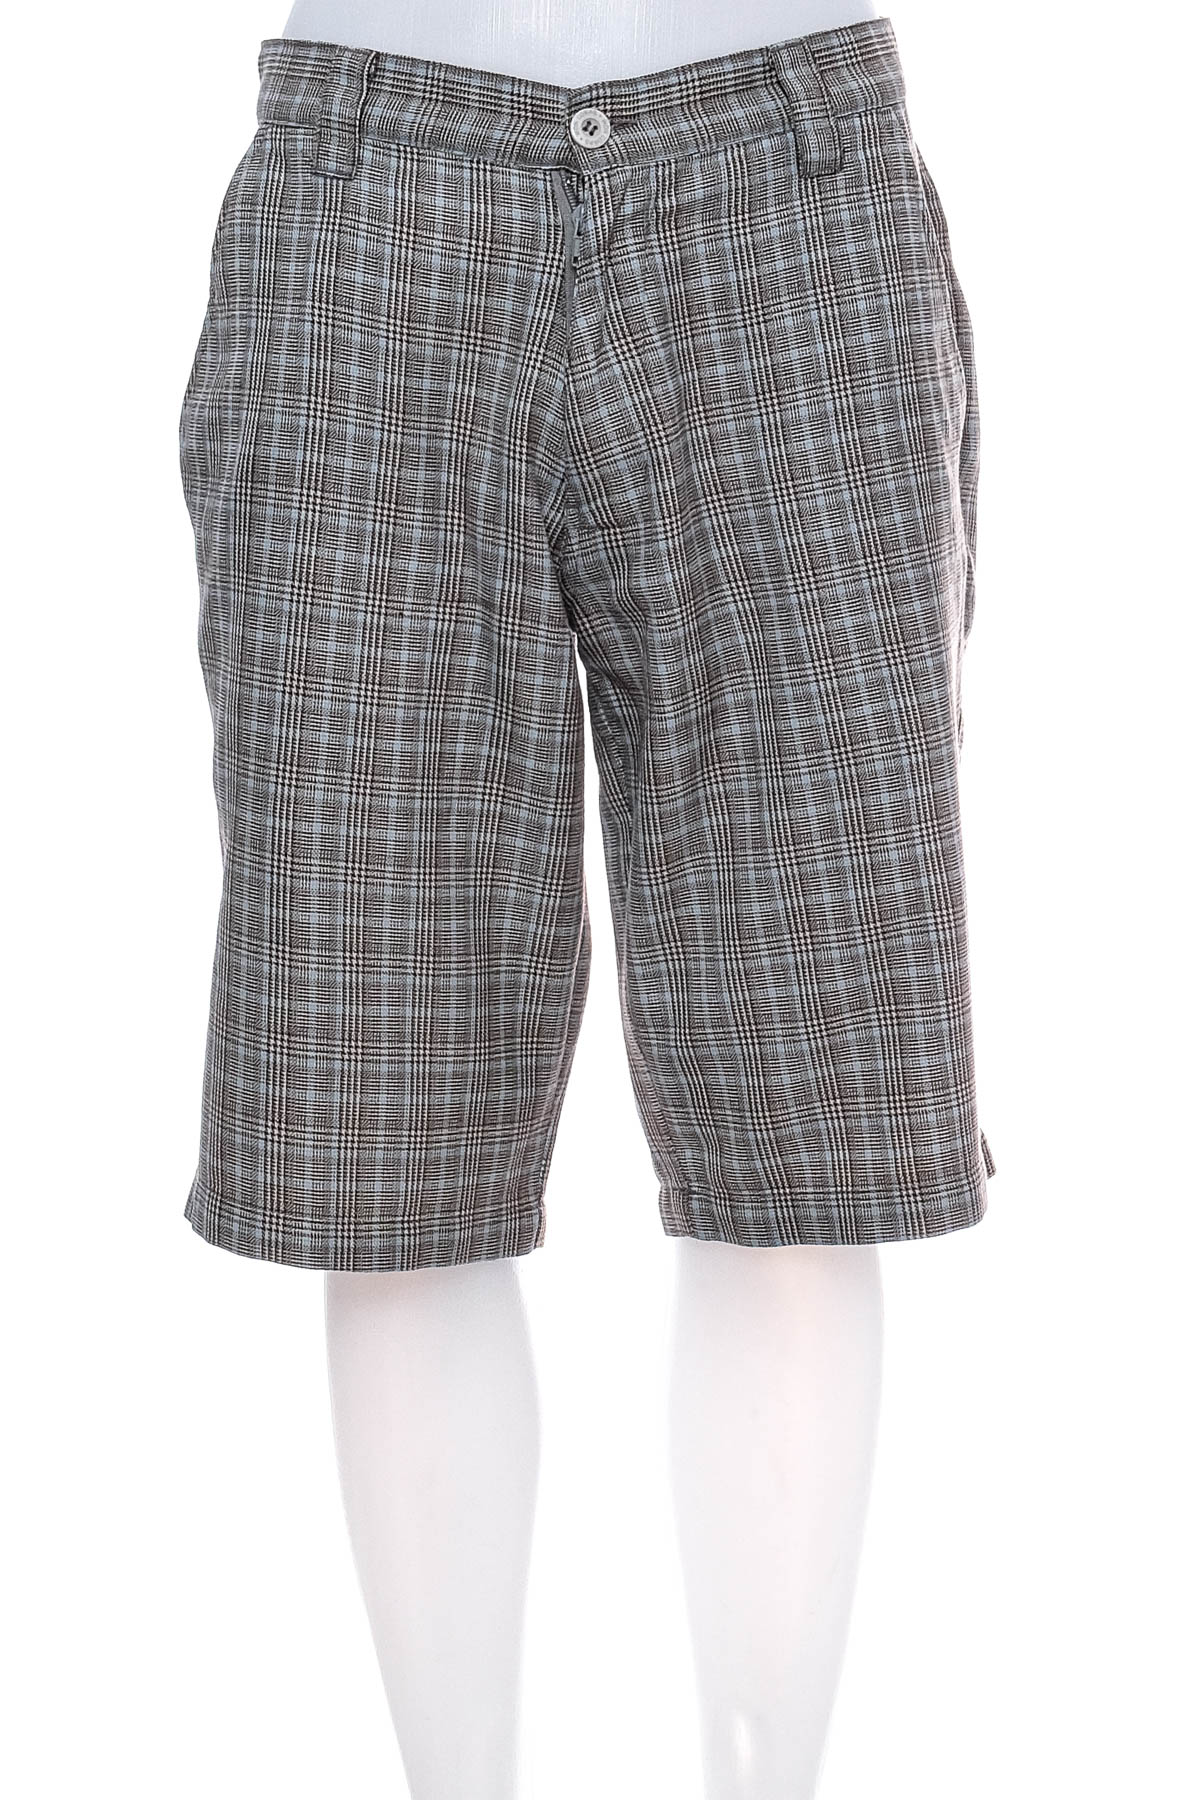 Men's shorts - WESTCO - 0